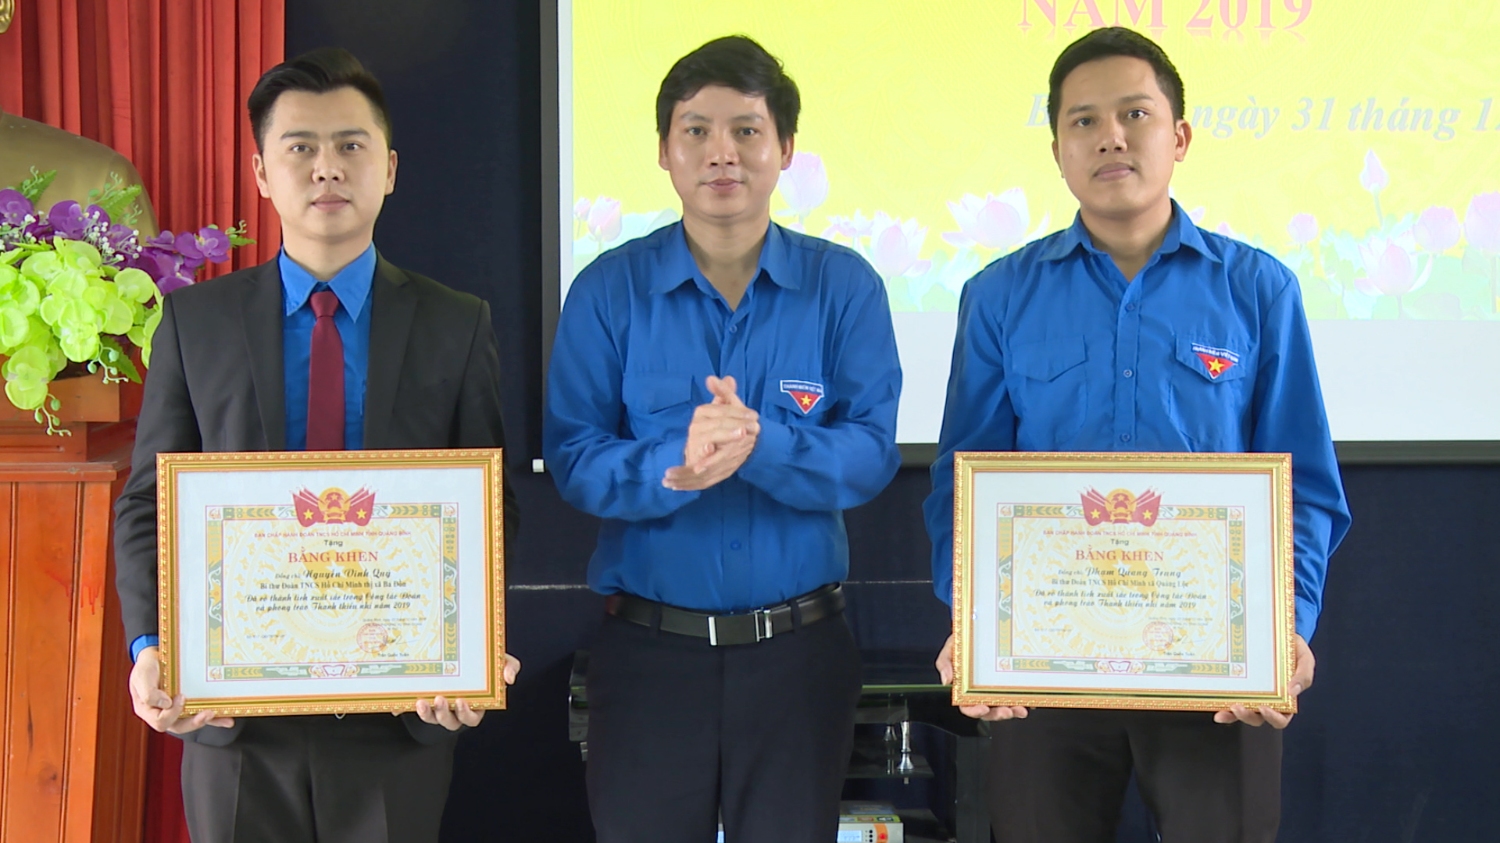 Tỉnh Đoàn Quảng Bình đã tặng bằng khen cho 2 tập thể có thành tích xuất sắc trong công tác Đoàn và phong trào thanh thiếu nhi năm 2019